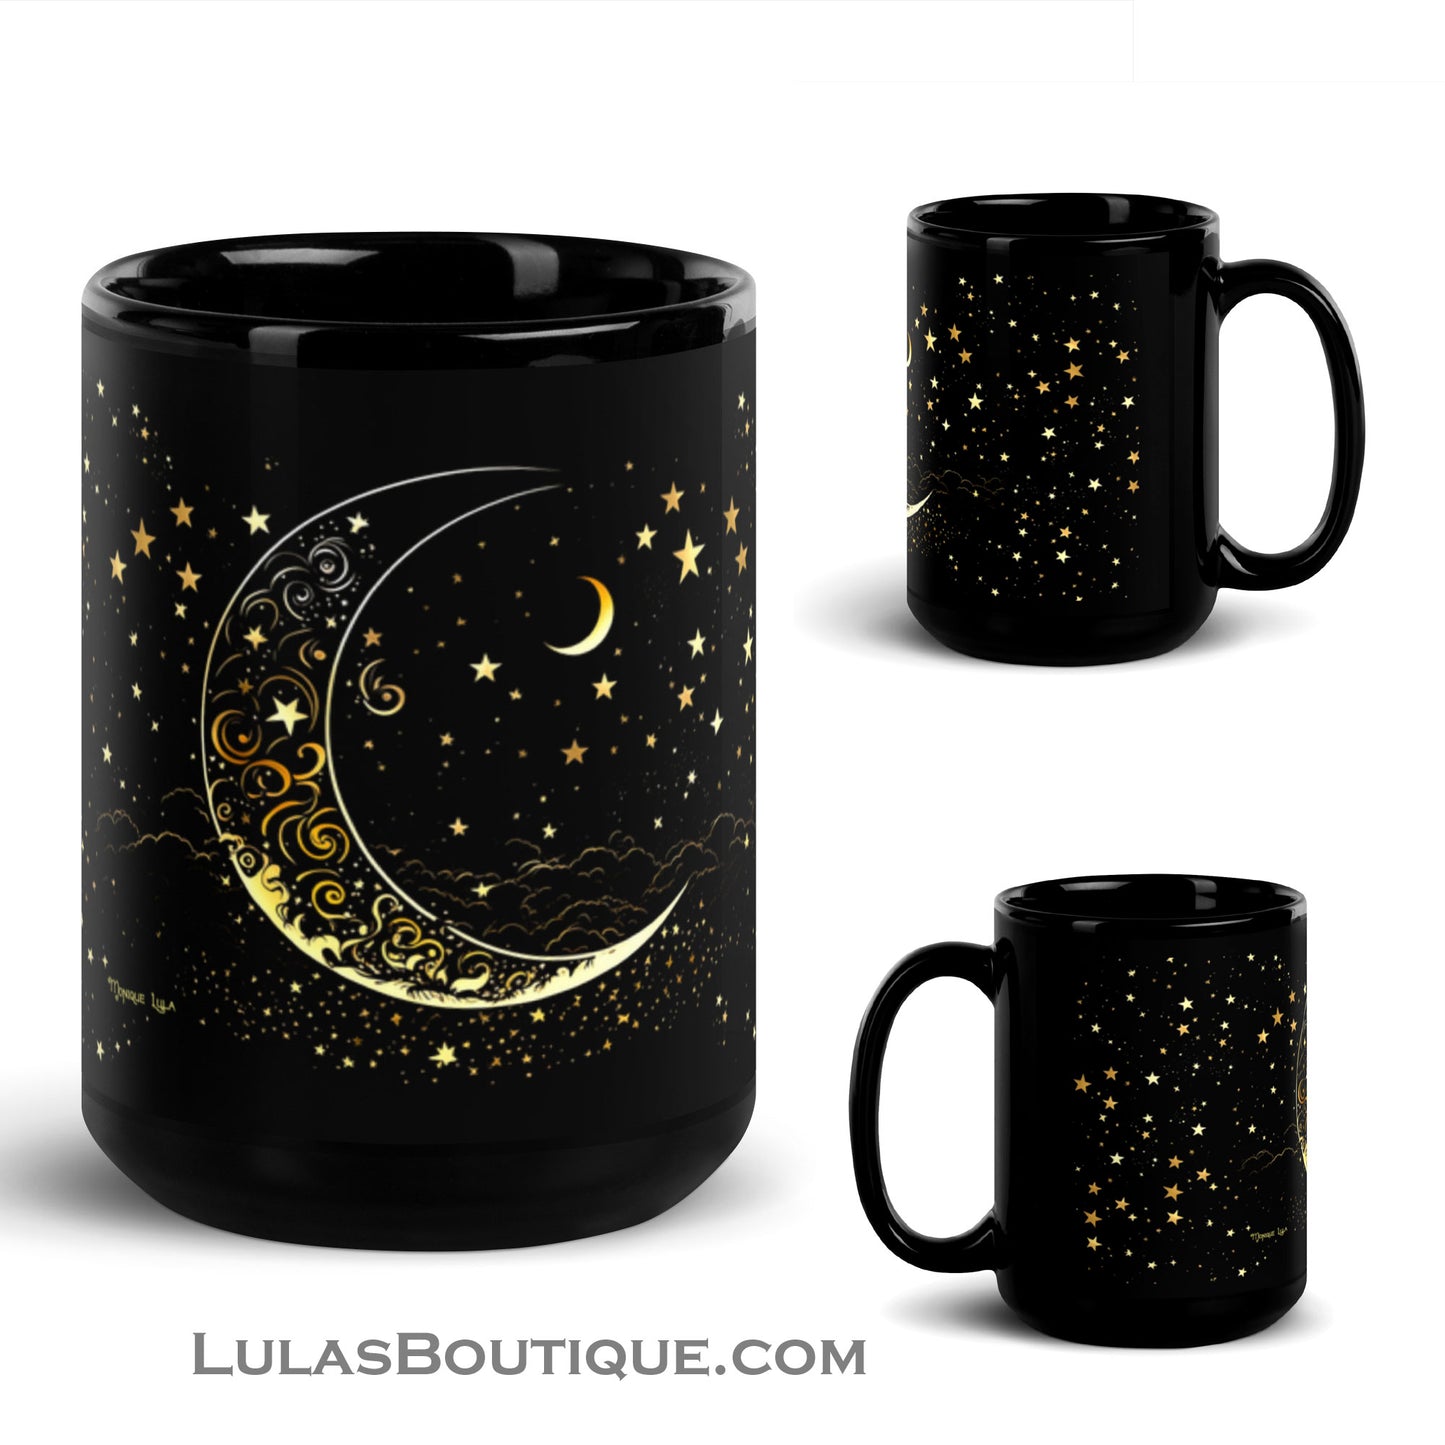 Celestial Mug